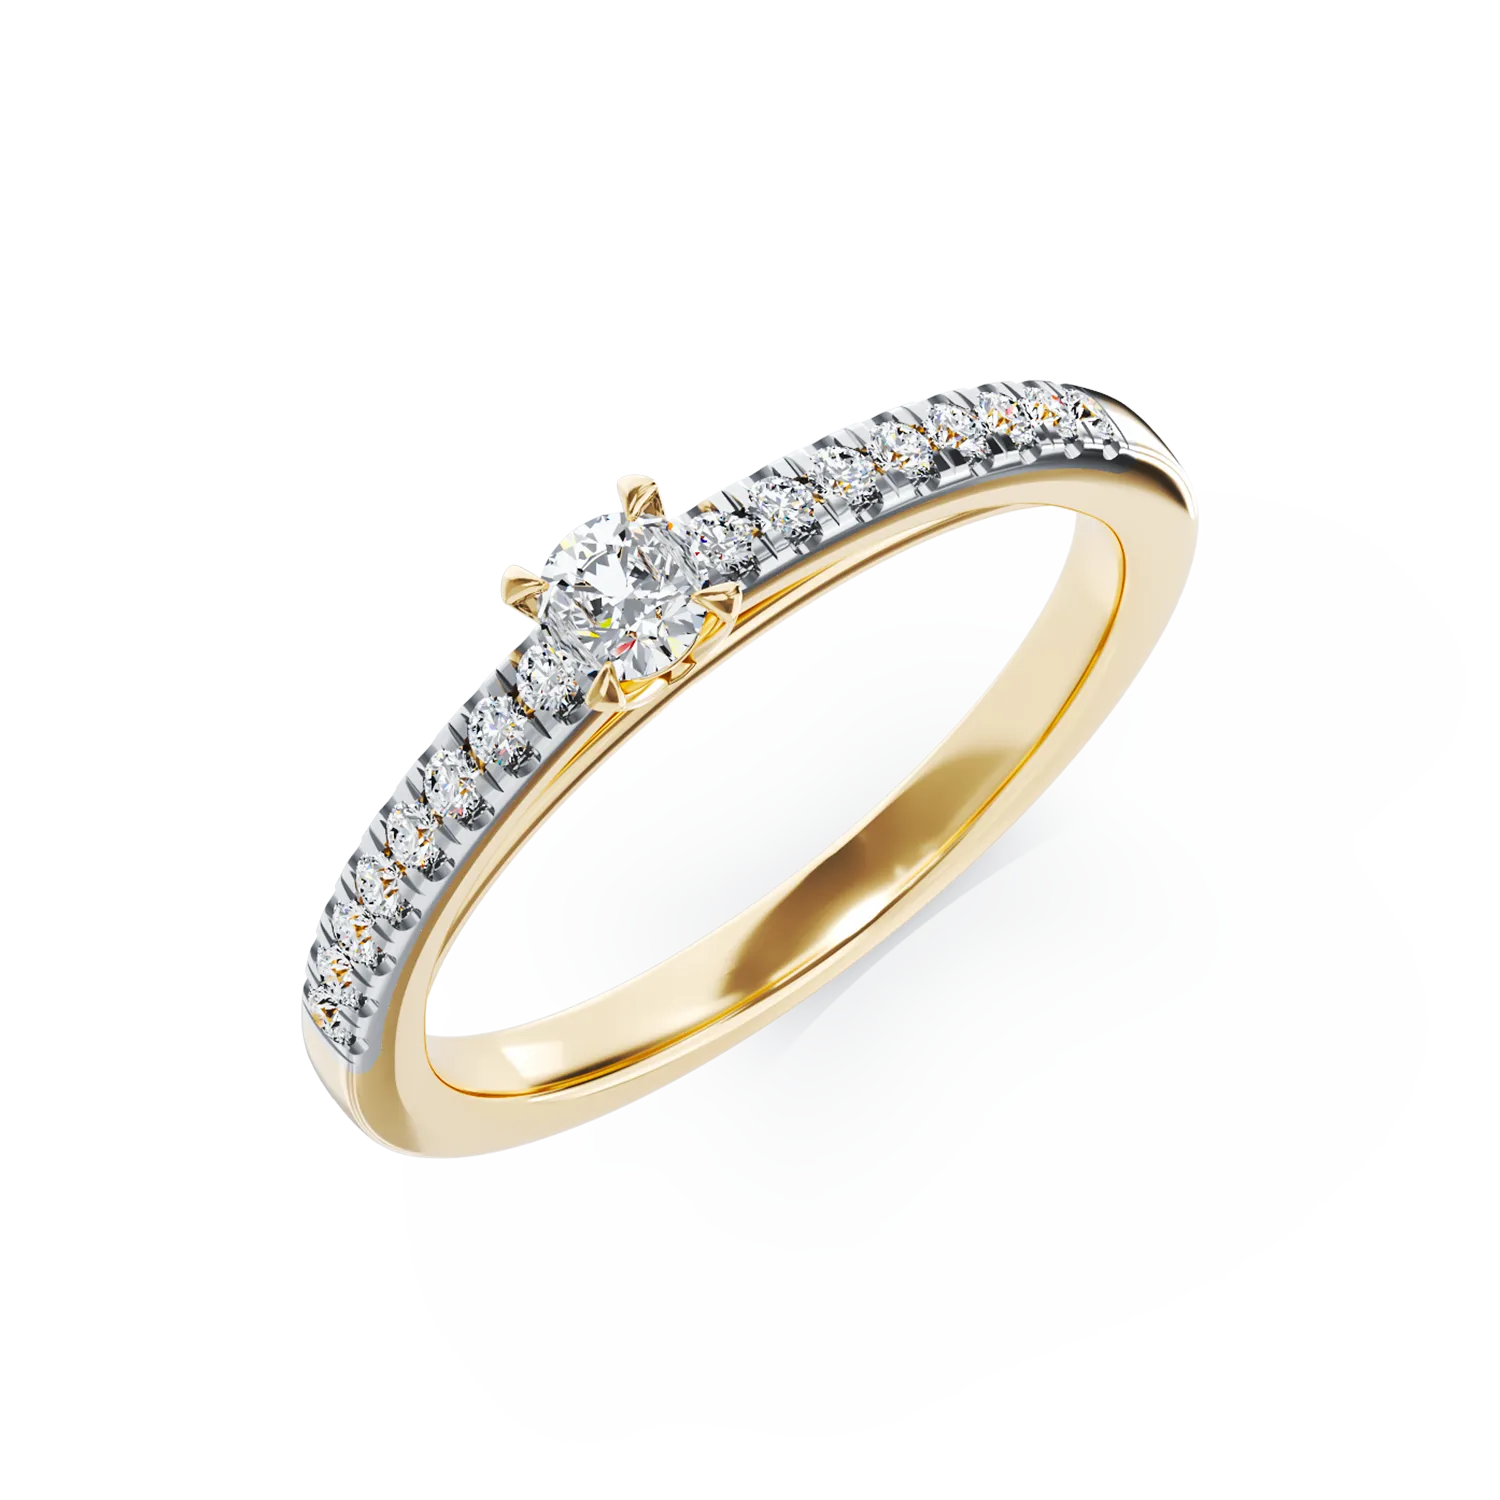 Eljegyzési gyűrű 18K-os sárga aranyból 0,145ct gyémánttal és 0,158ct gyémánttal. Gramm: 2,16